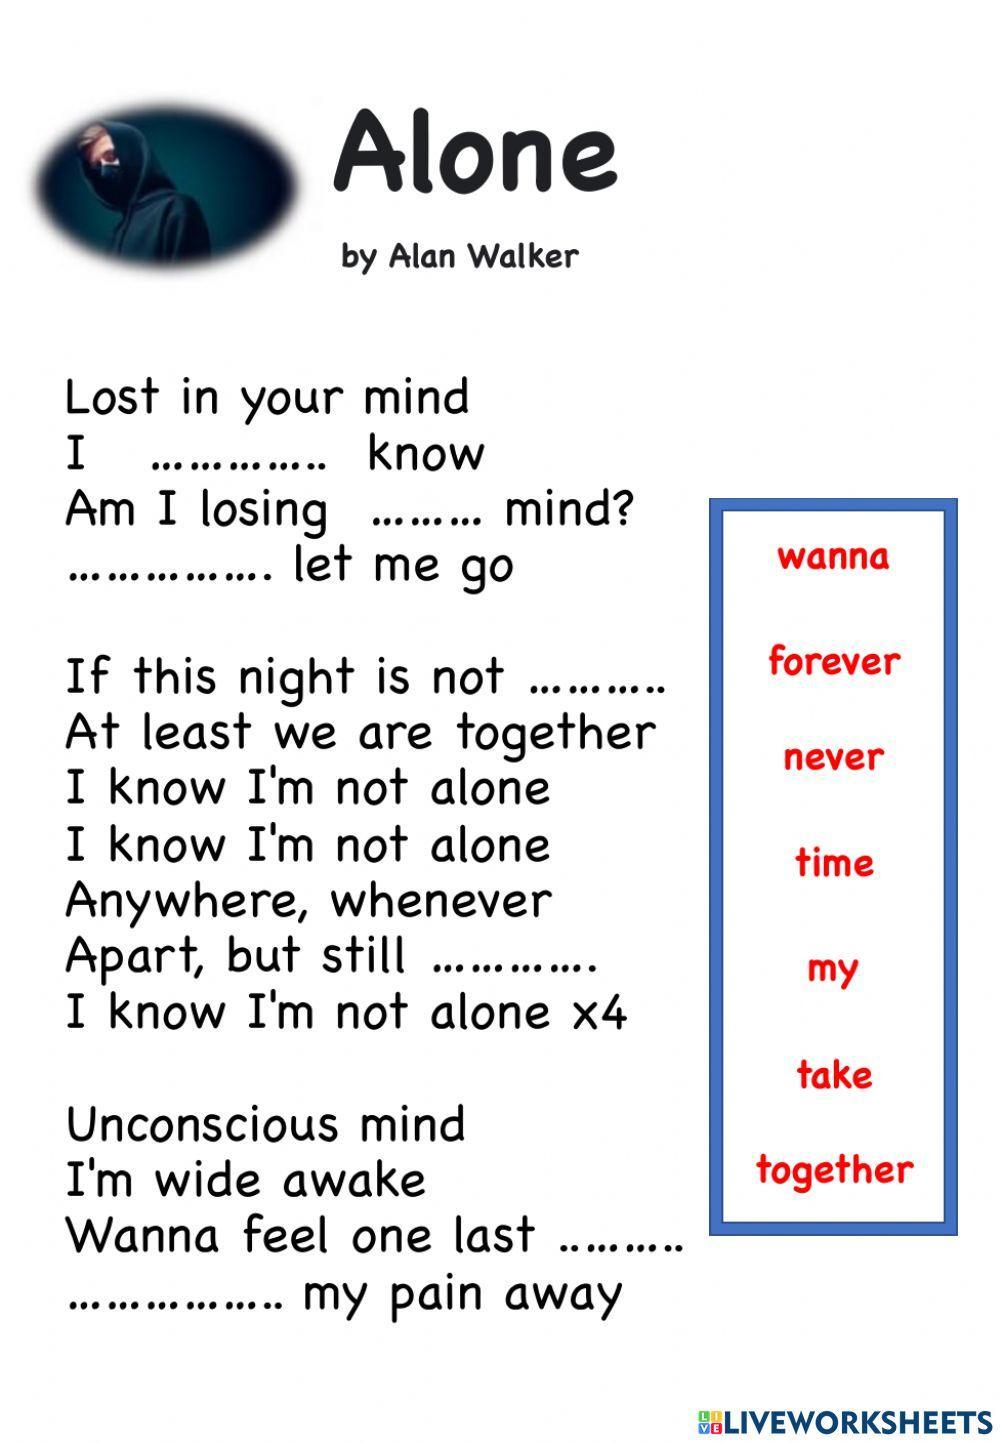 Alone by Alan Walker